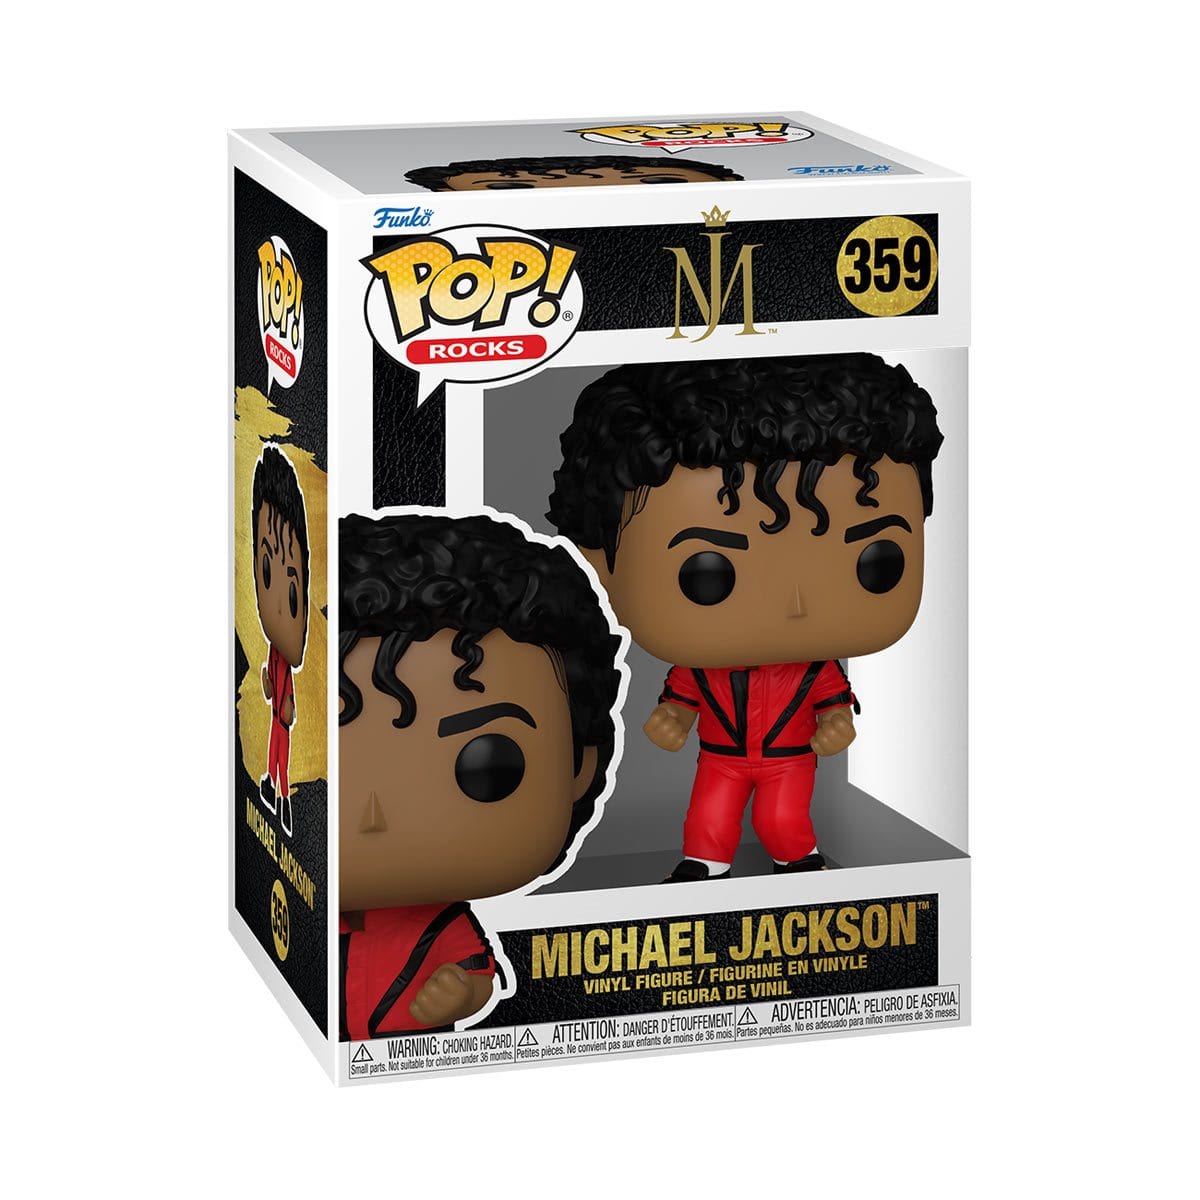 Michael Jackson Thriller Pop! Vinyl Figure in window display box